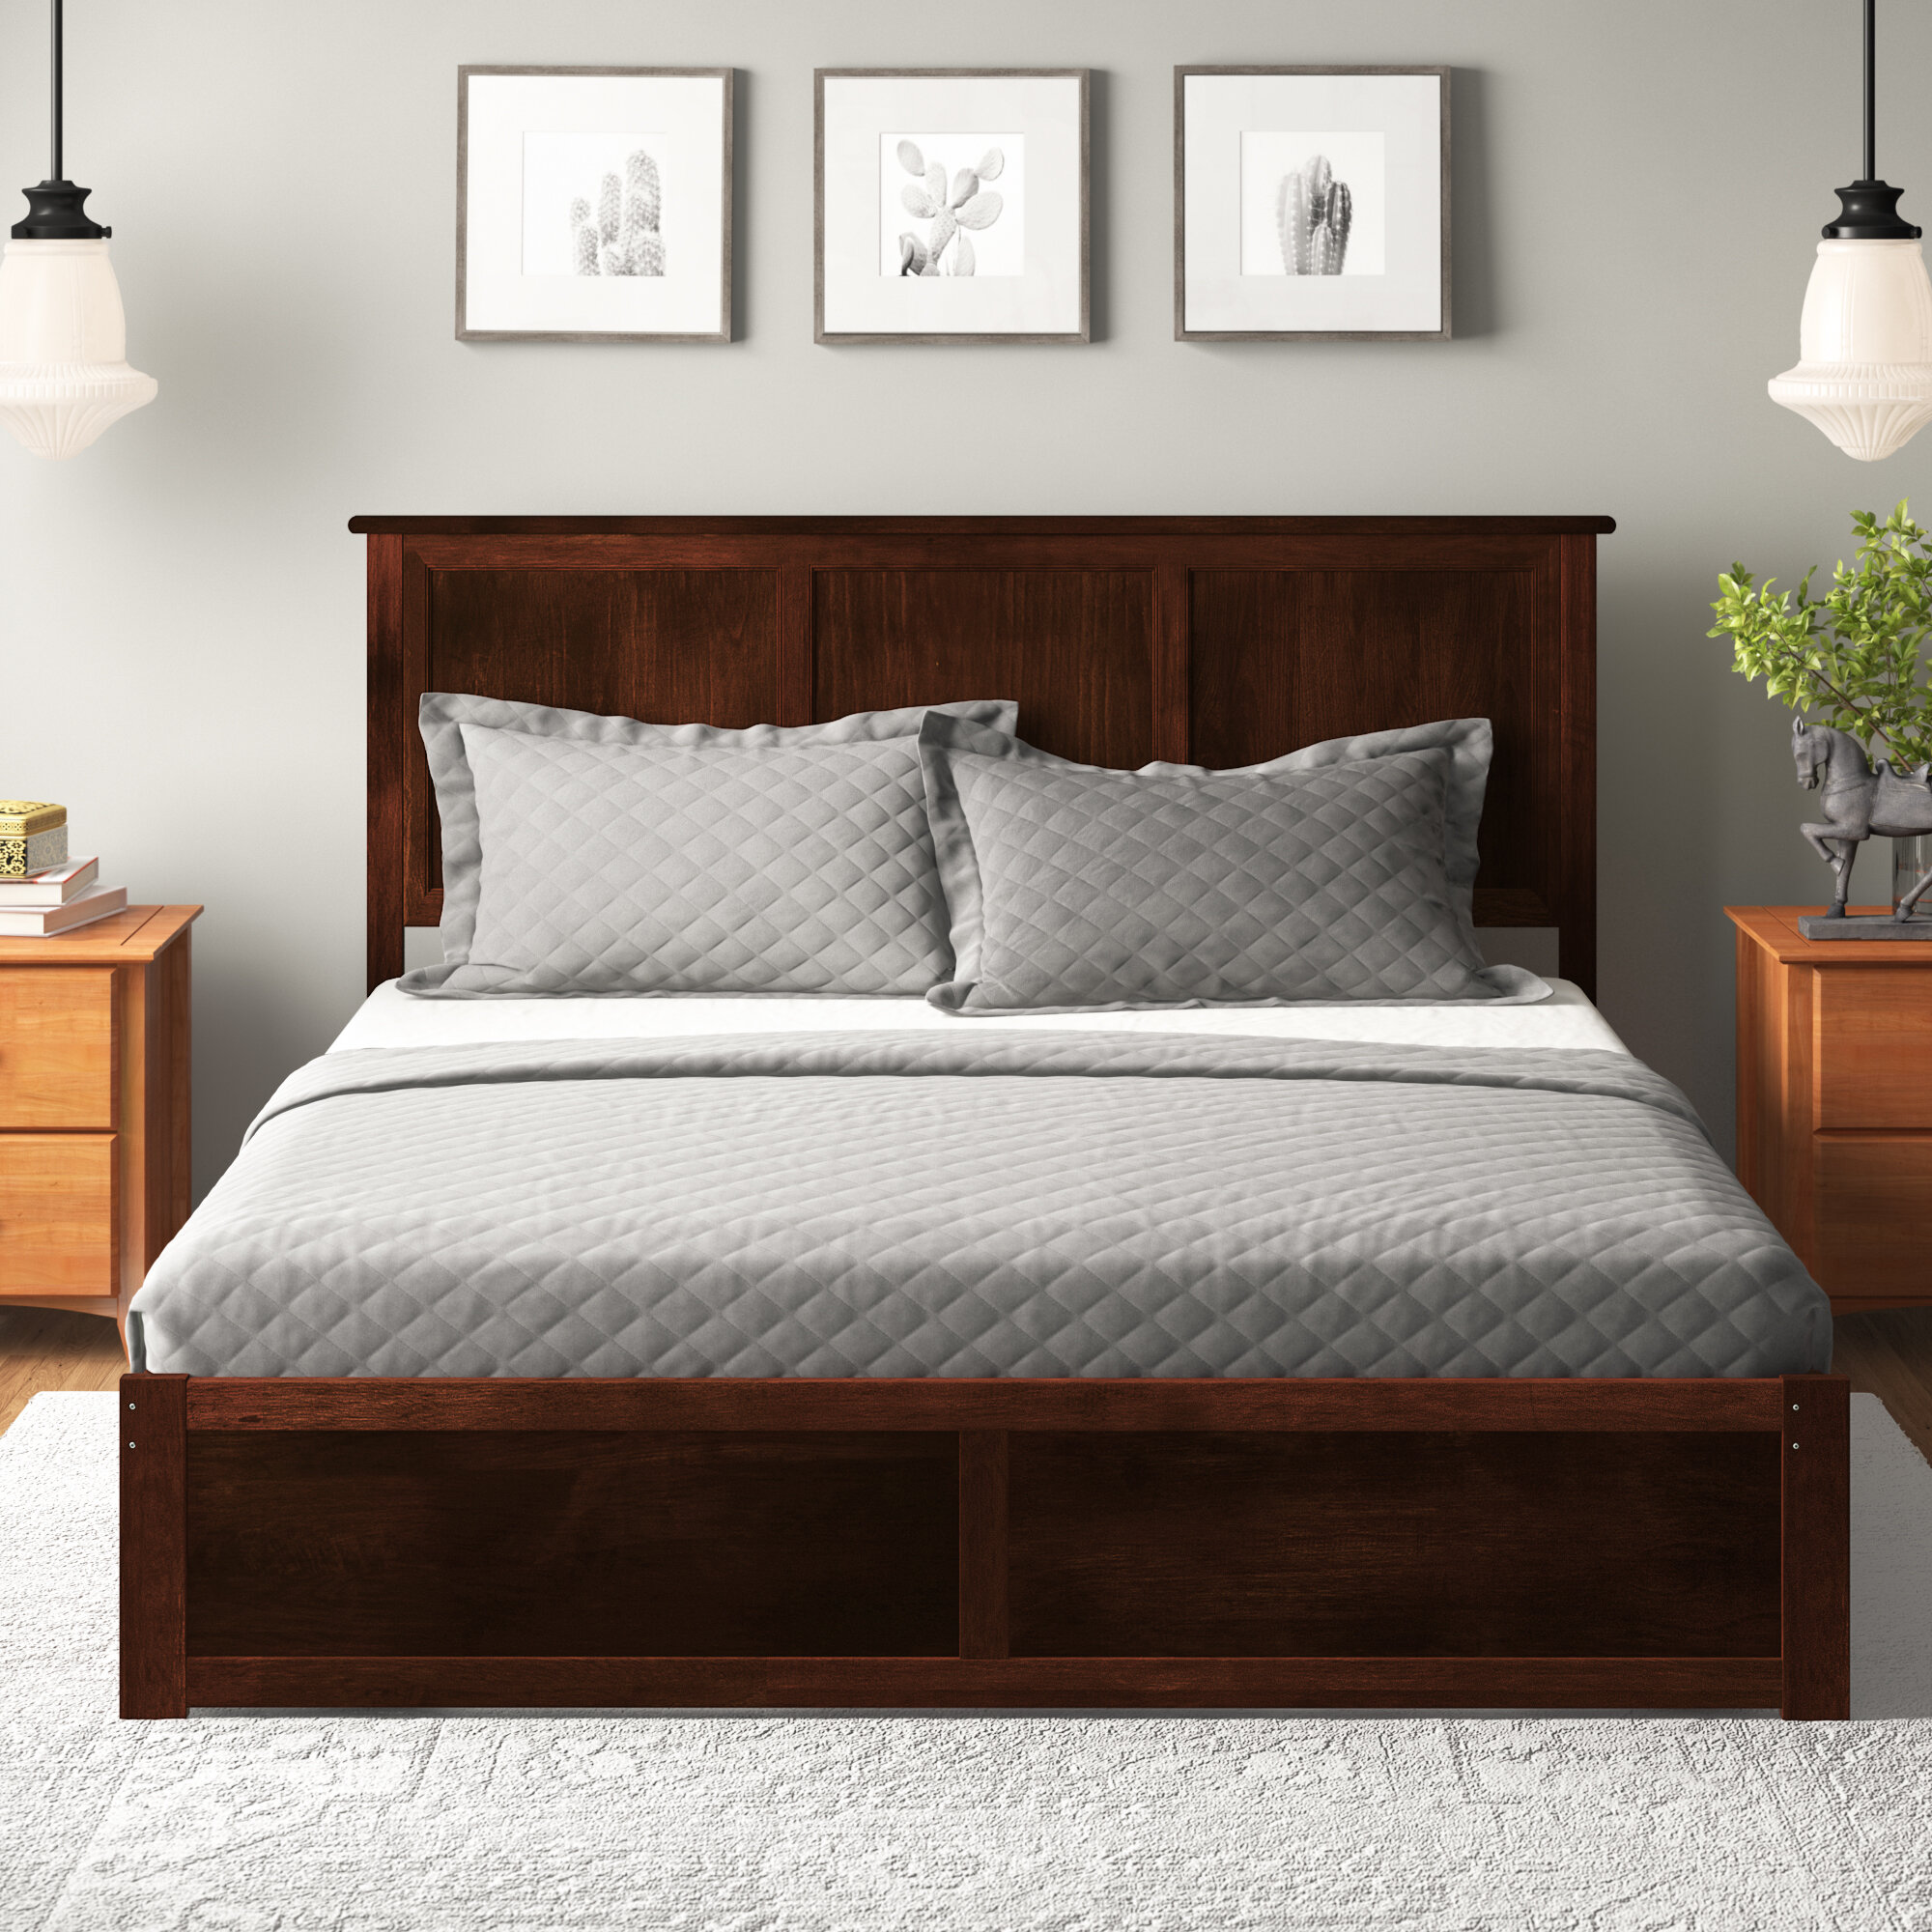 King Size Headboard Black Bed Frame Shelves Wood Bedroom Furniture Bedding Beds 